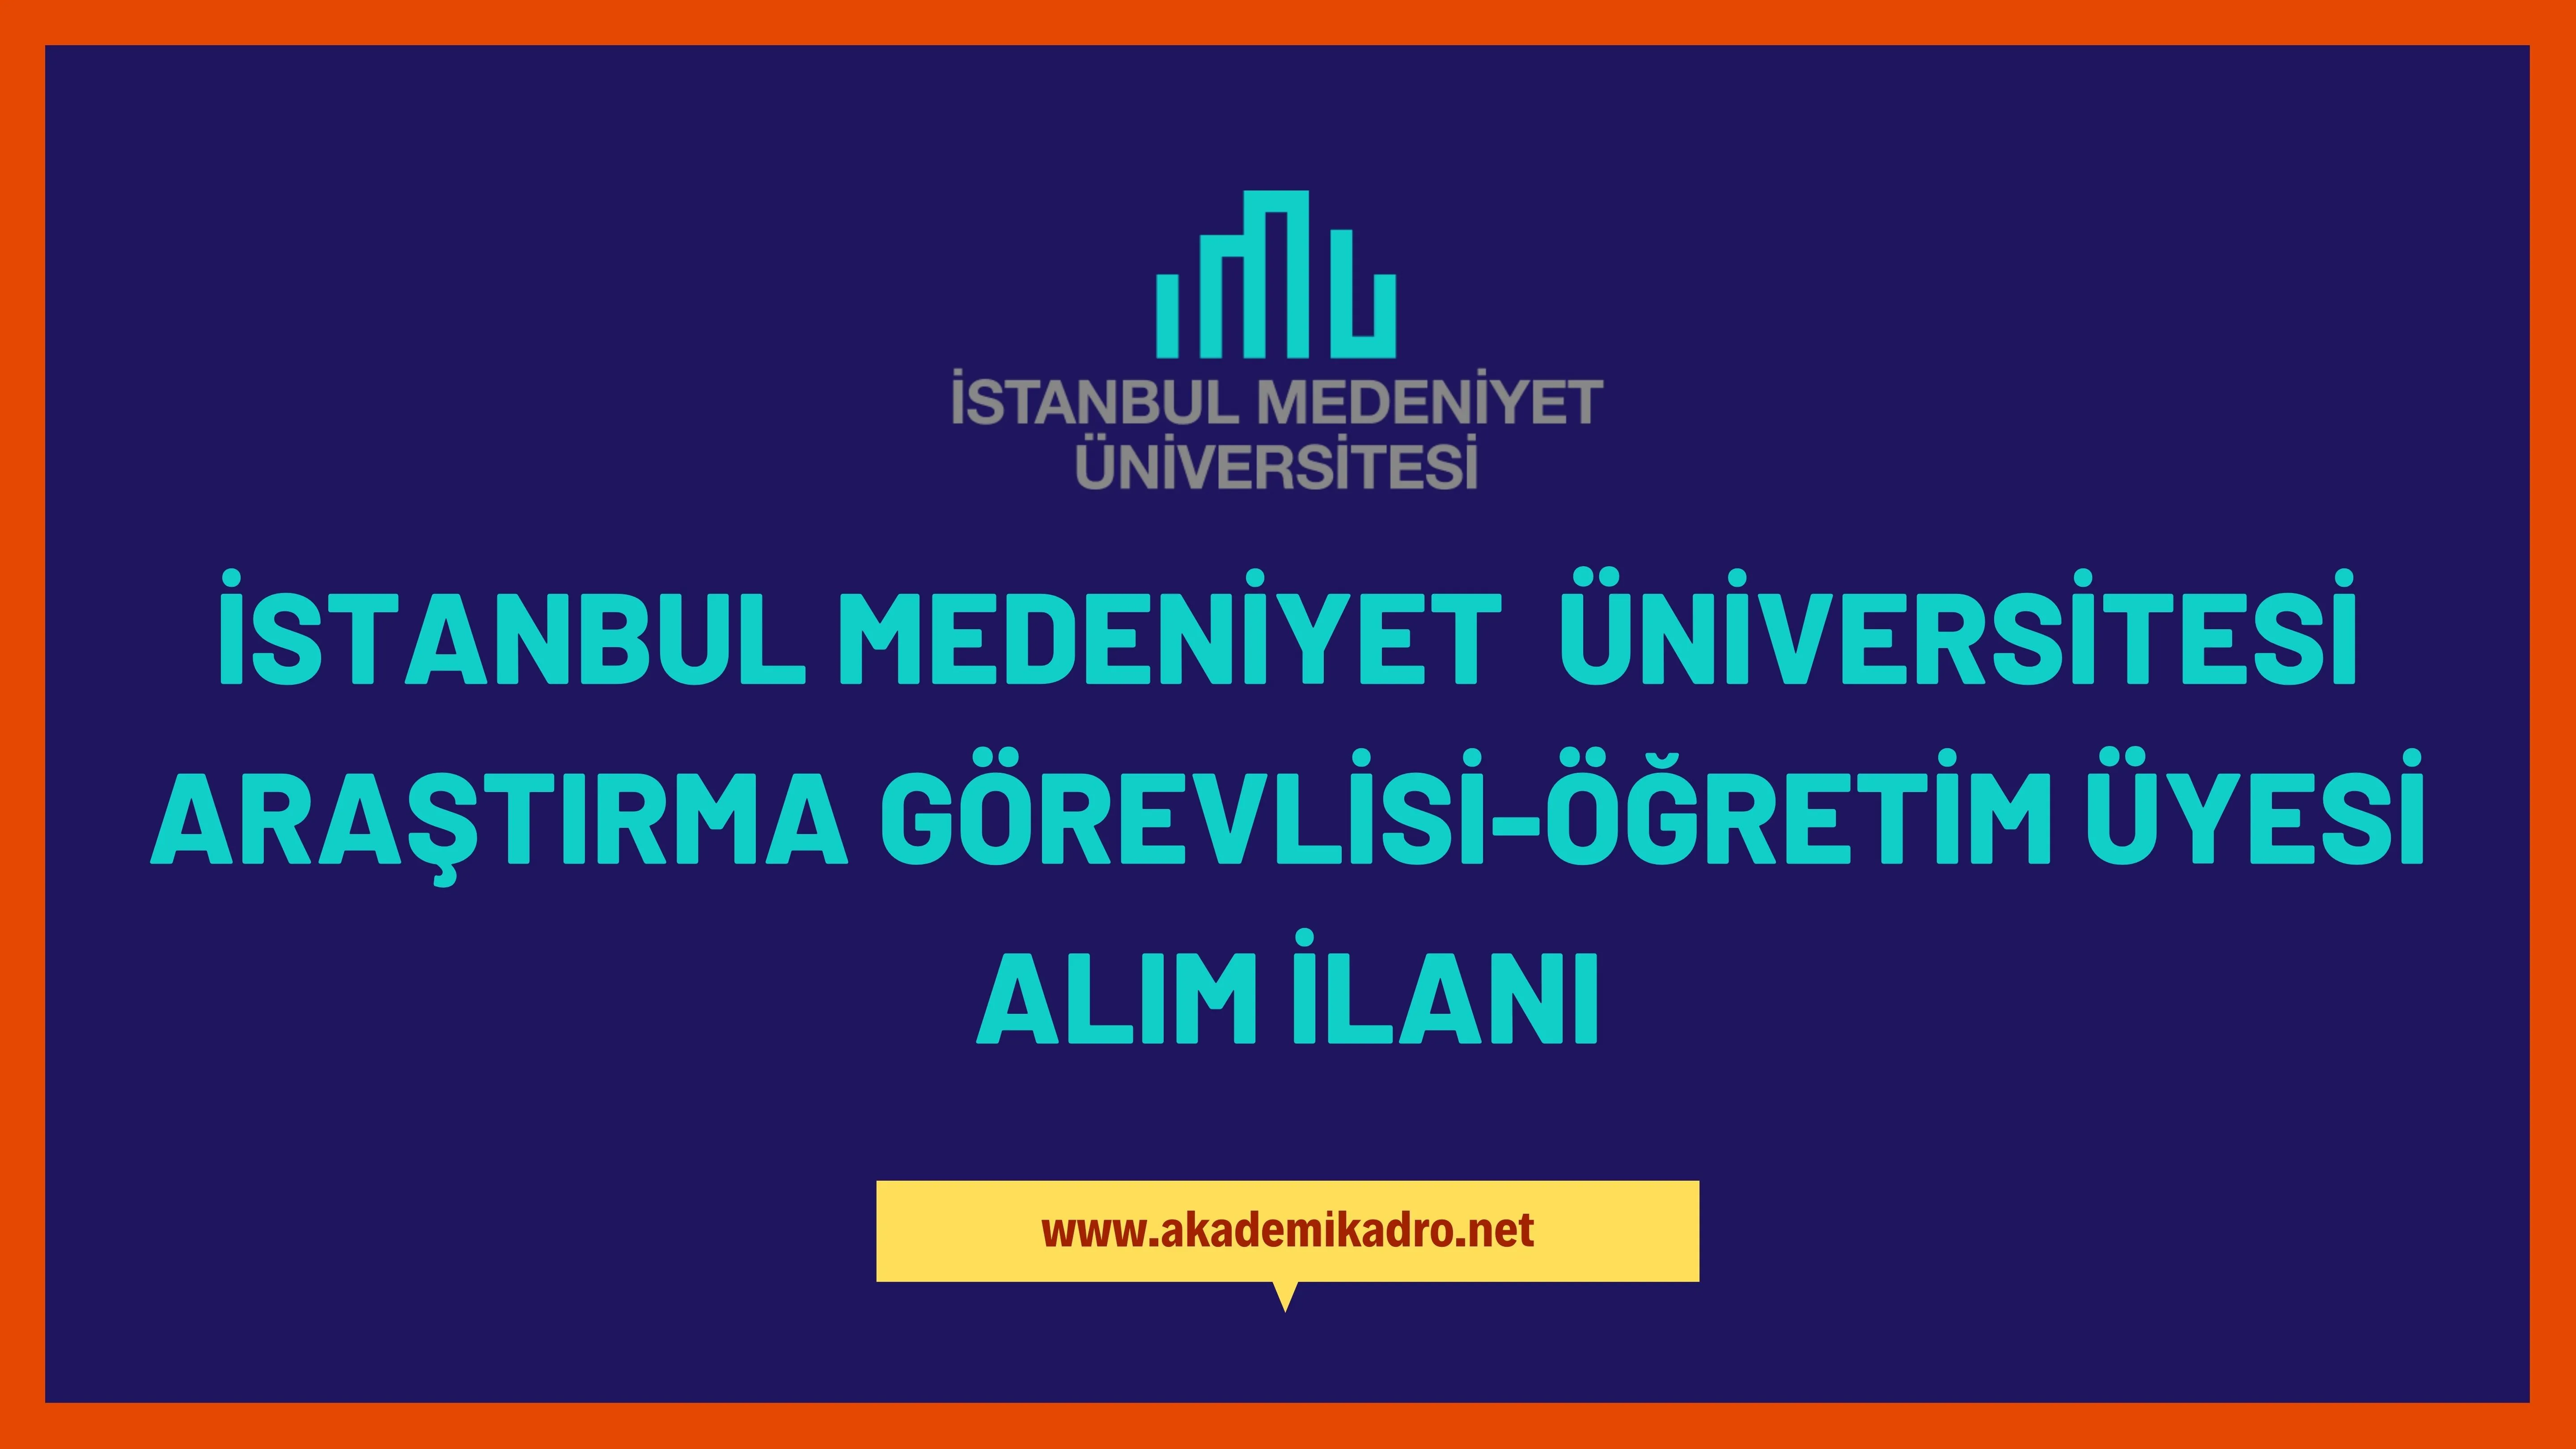 İstanbul Medeniyet Üniversitesi Araştırma görevlisi, öğretim görevlisi ve öğretim üyesi olmak üzere 24 Öğretim elemanı alacak.